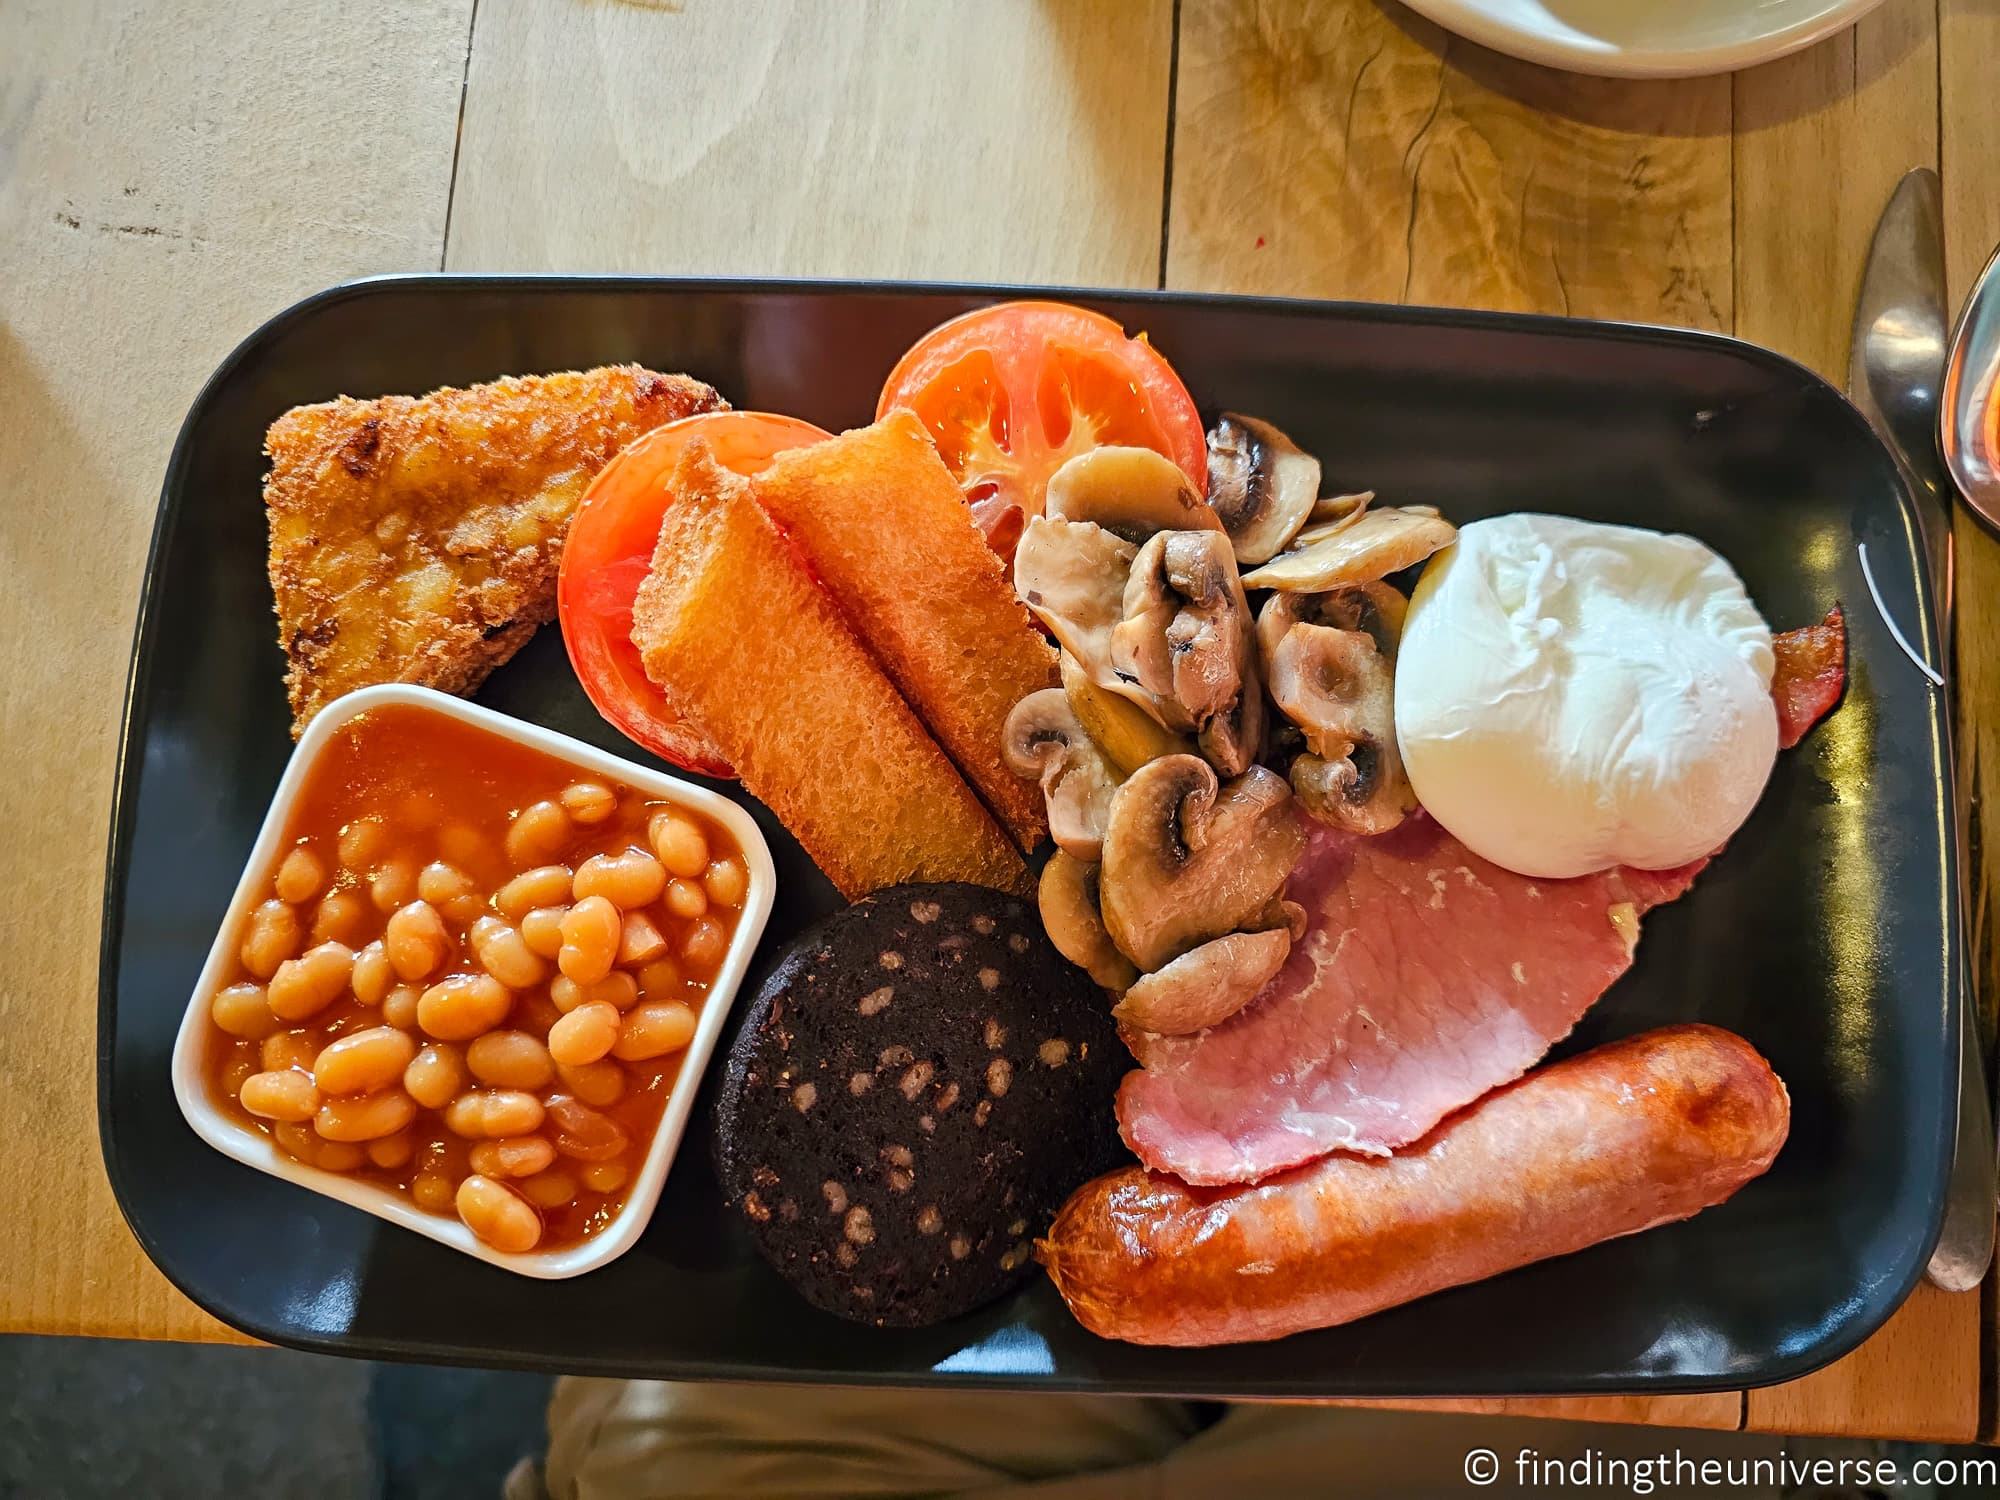 Traditional Welsh breakfast